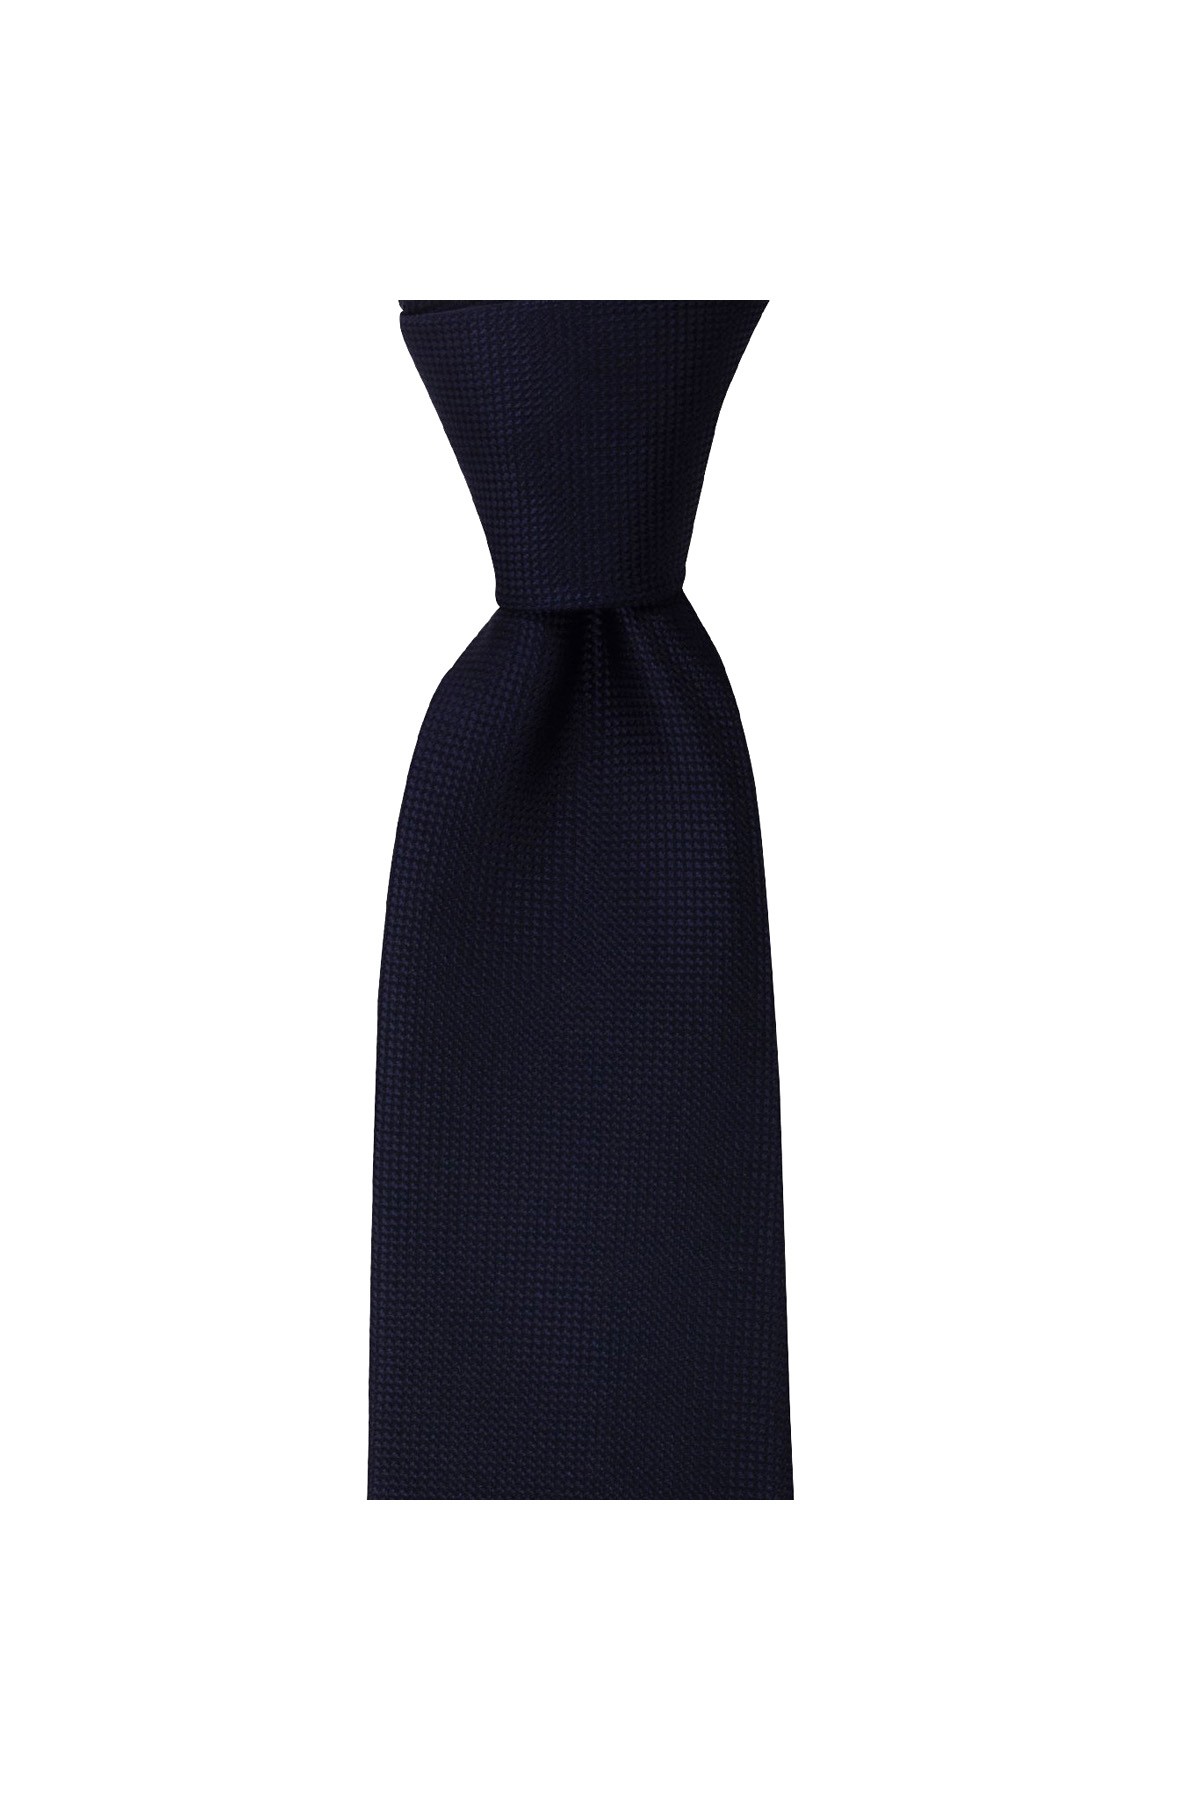 Düz renkli 8 cm genişliğinde mendilli kravat - Lacivert